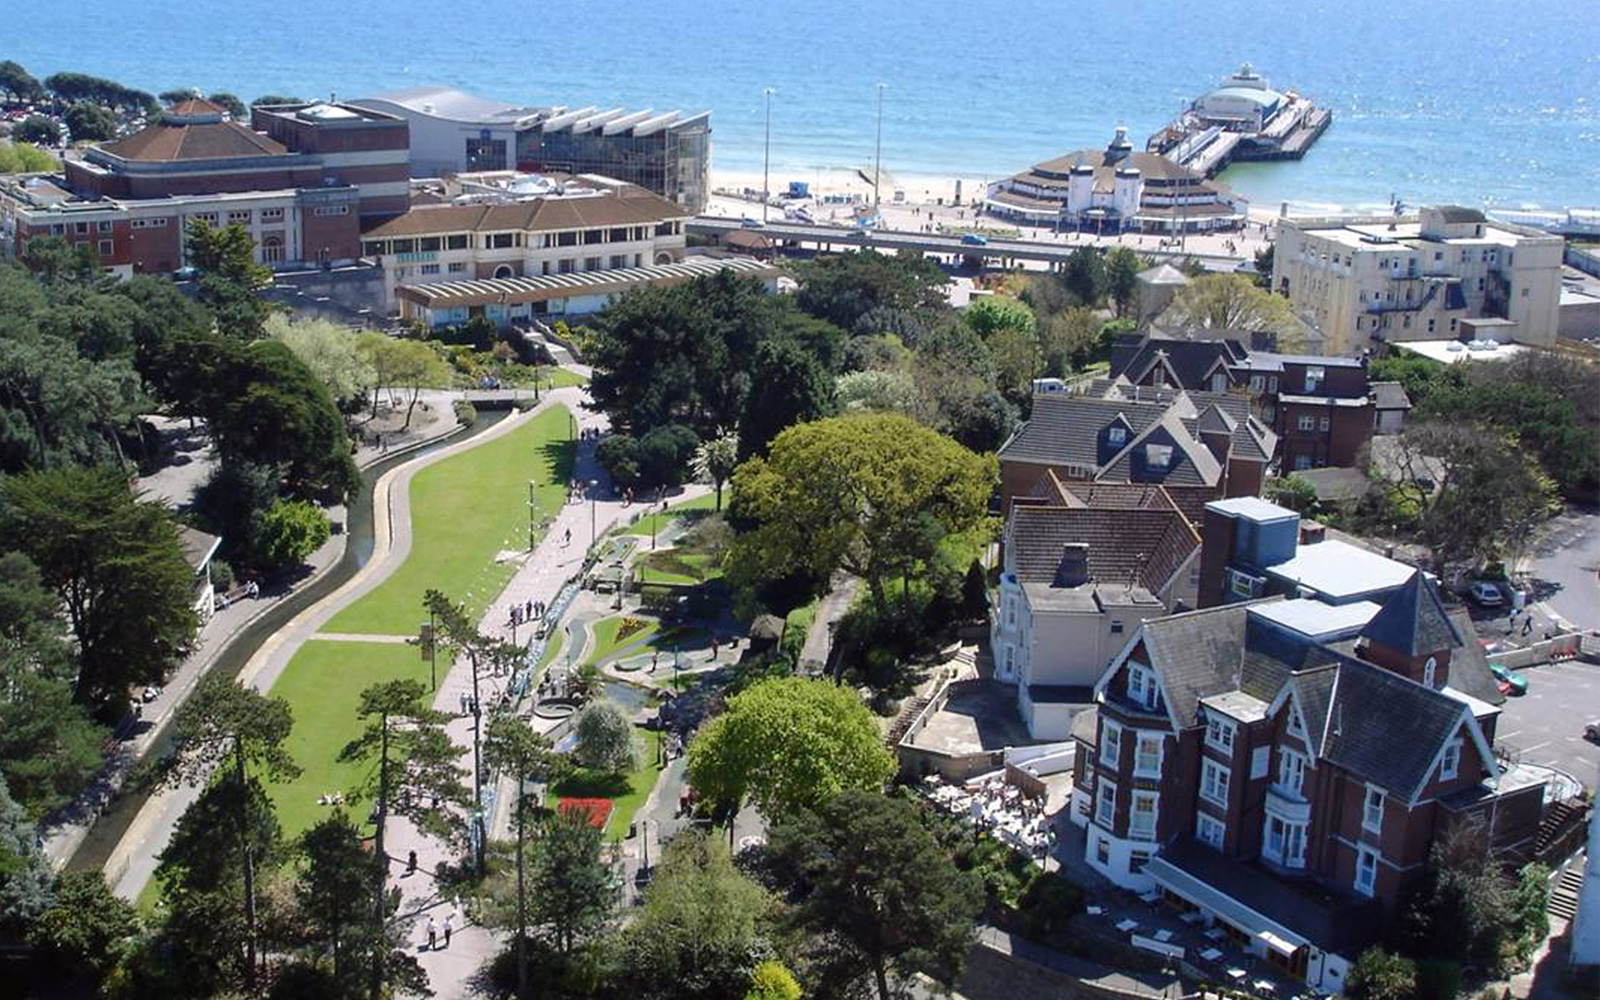 دورات الأعمال ( Business Courses ) في بورنموث Bournemouth